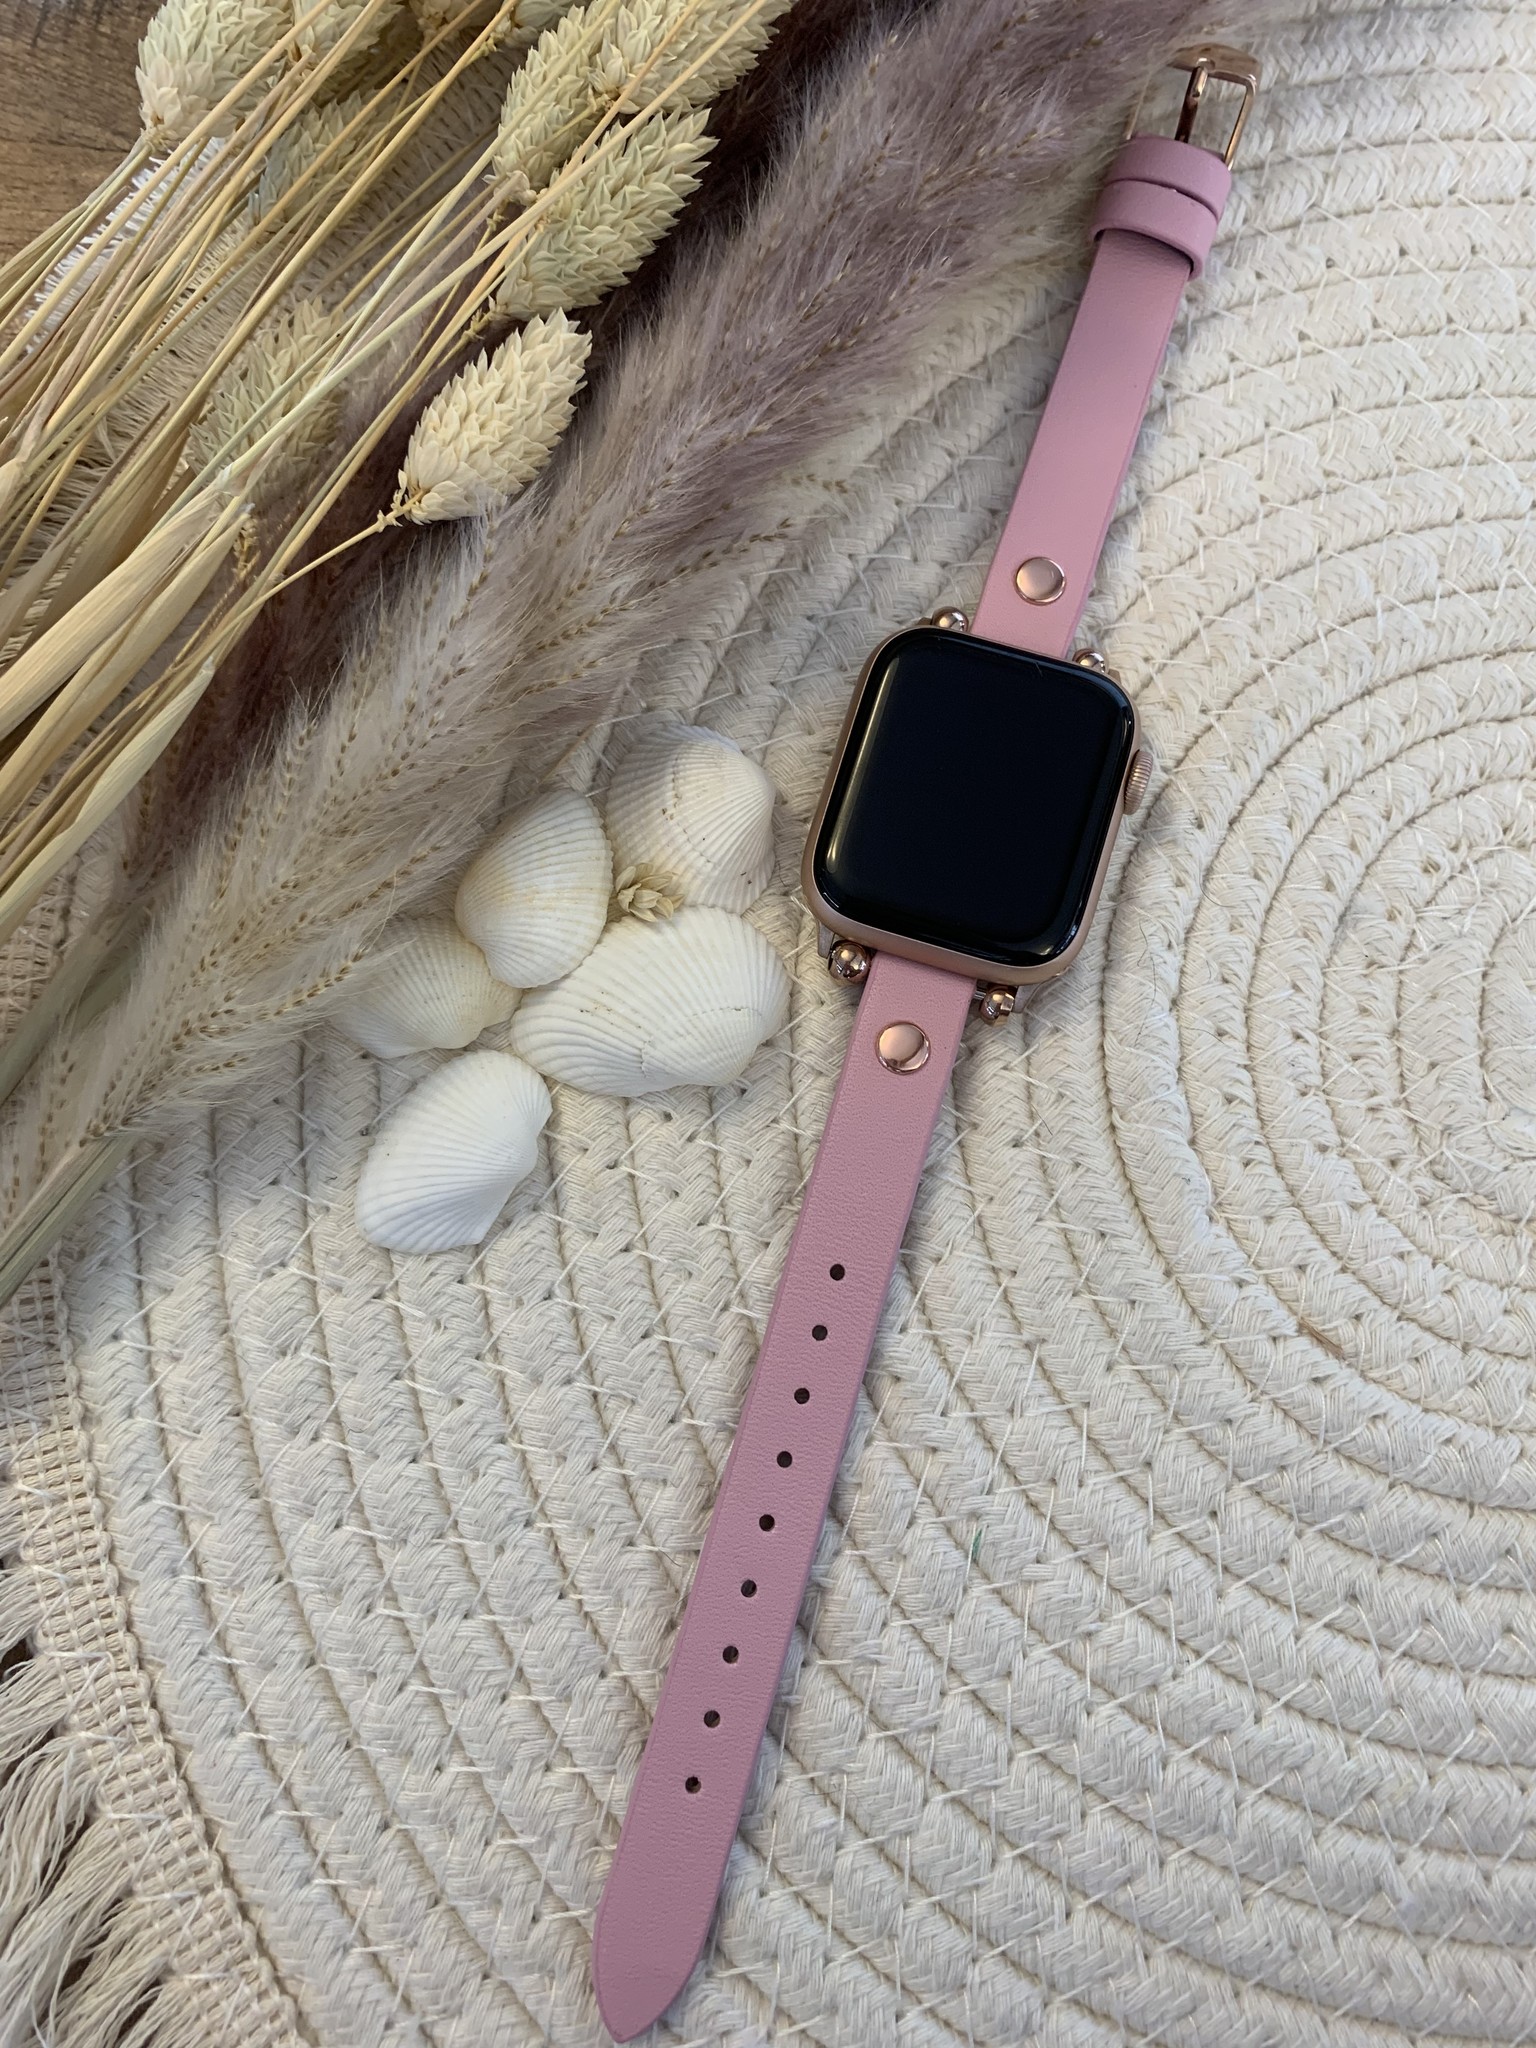 Correa inteligente de piel para el Apple Watch - rosa